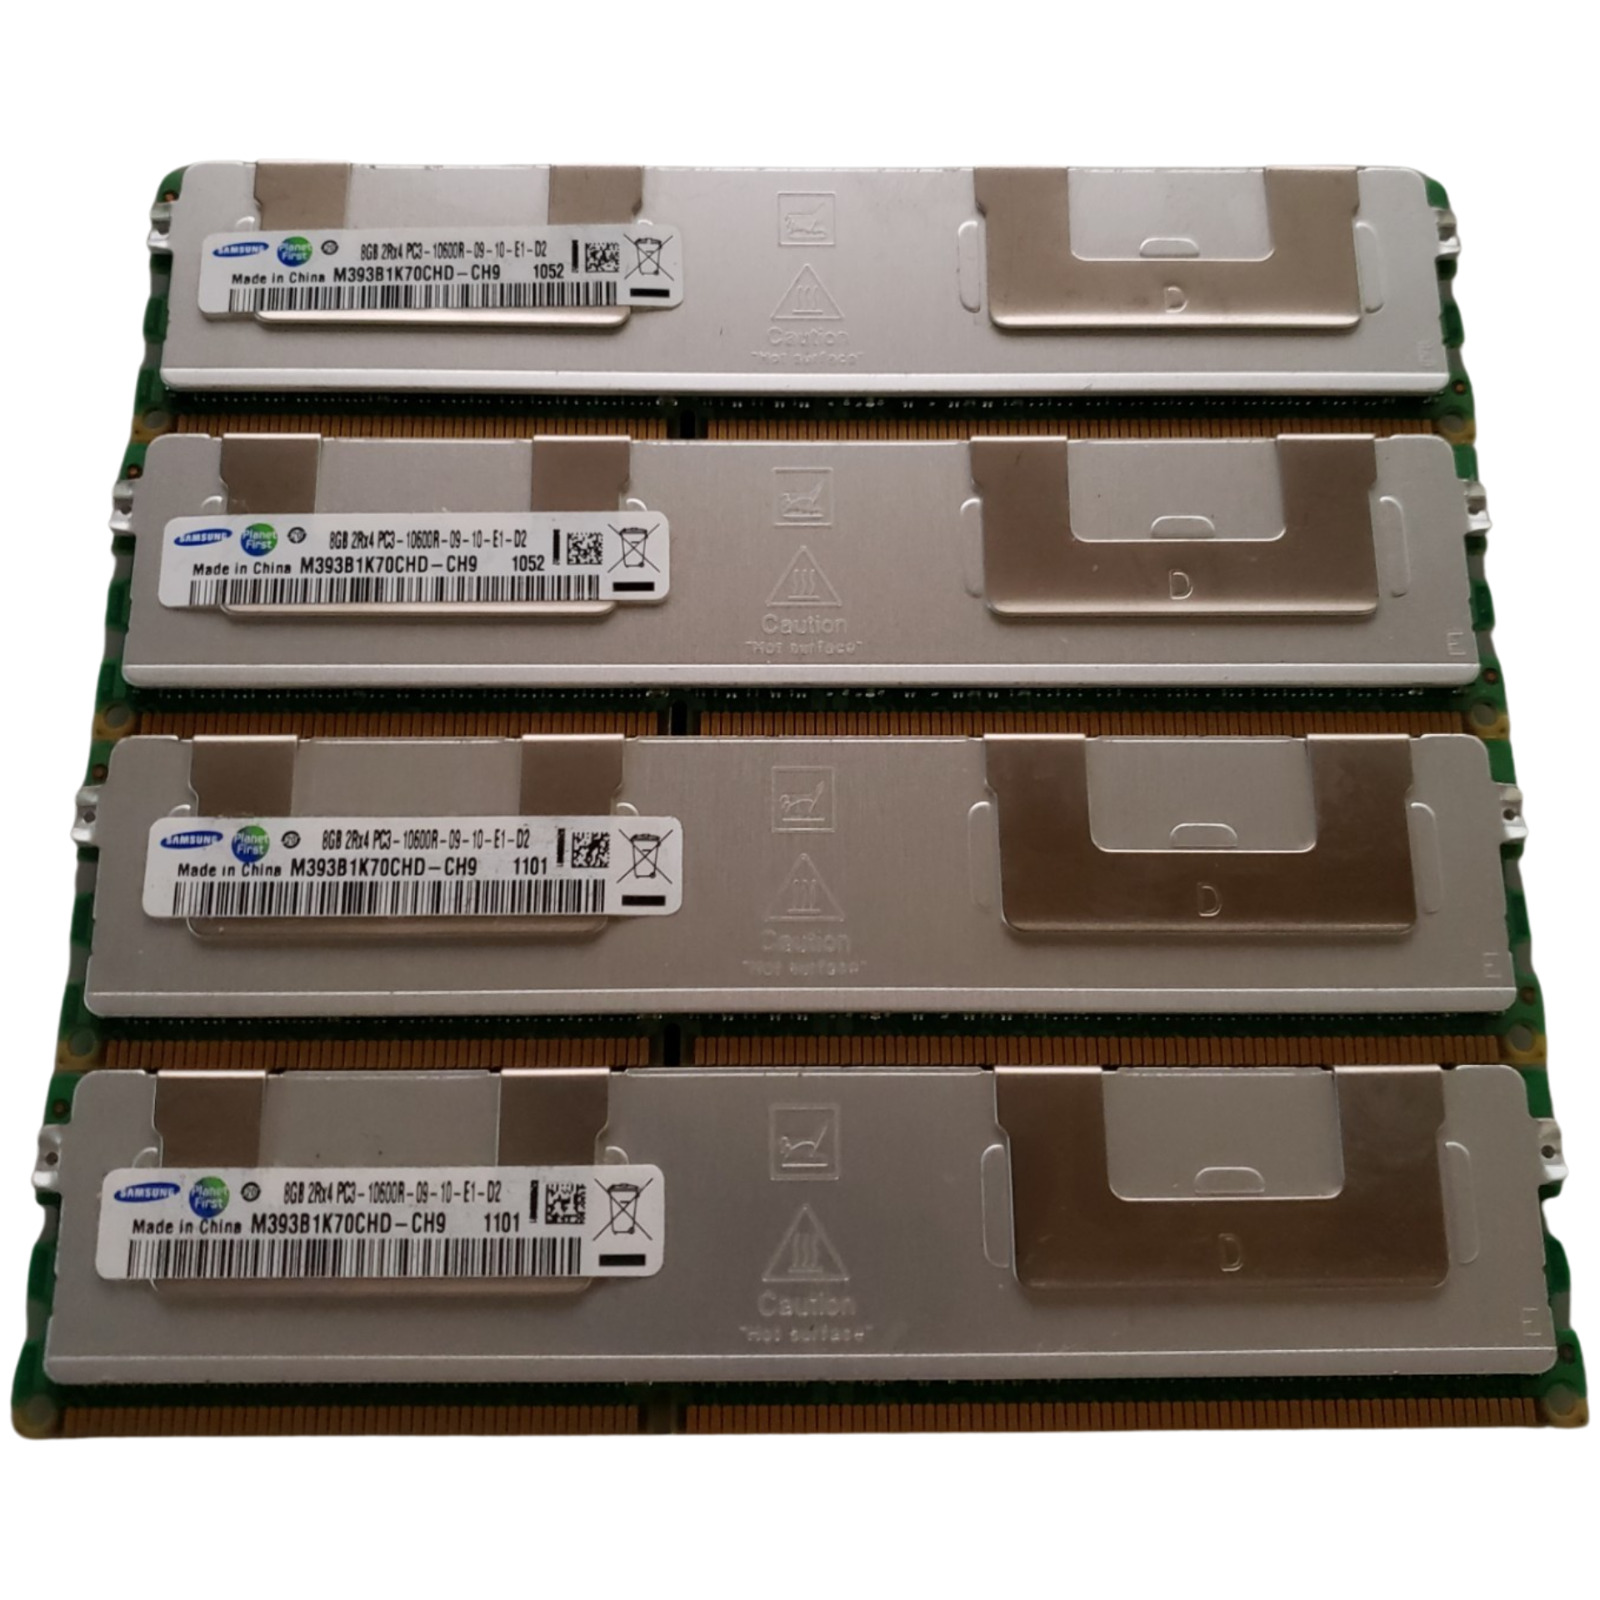 (4 Piece) Samsung M393B1K70CHD-CH9 DDR3-1333 32GB (4x8GB) Server Memory